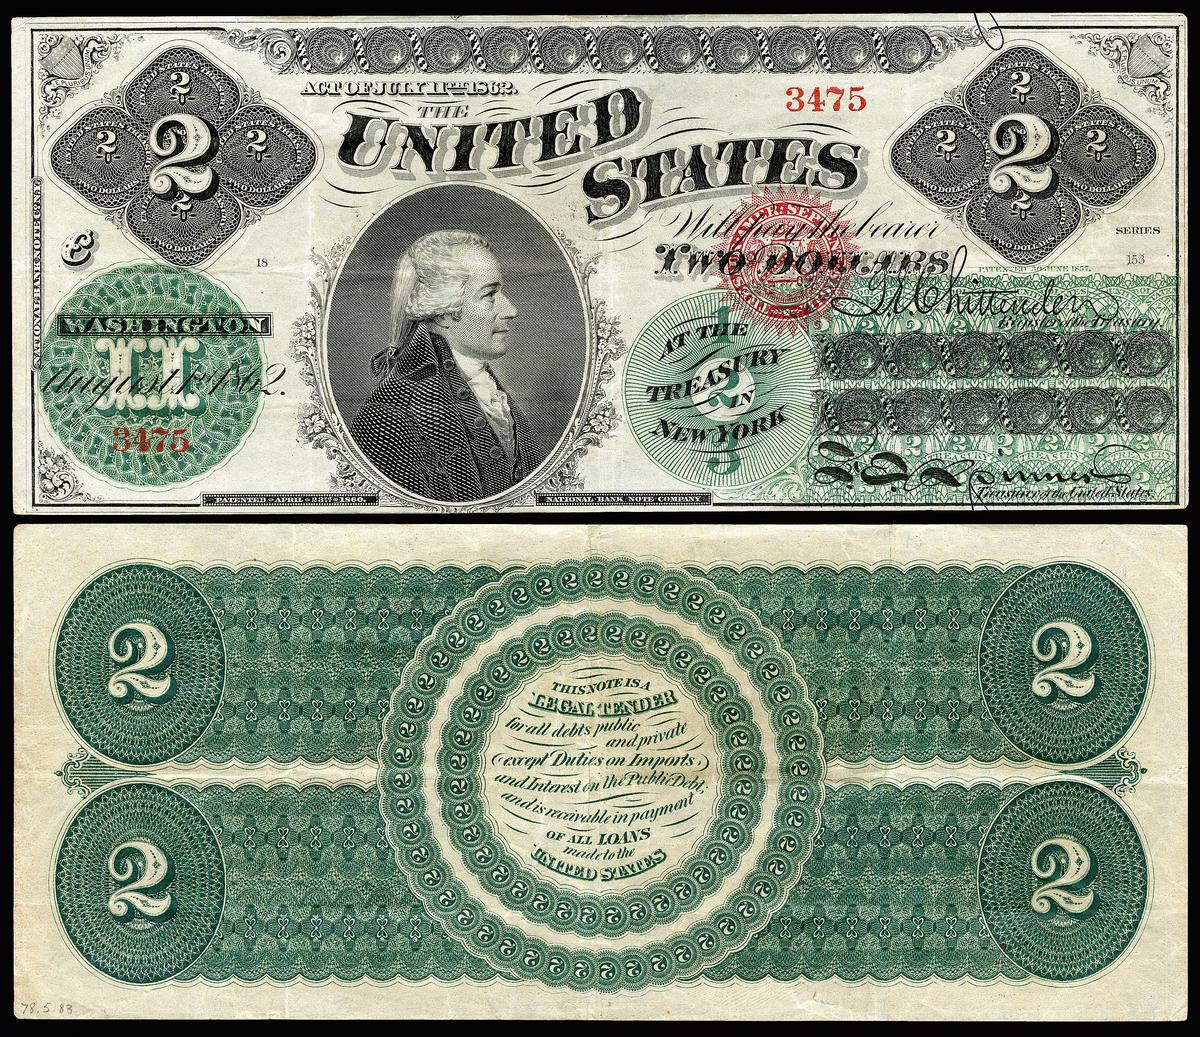 Một tờ 2 đô la năm 1862, không được lưu hành, được định giá để lấy 2.800 đô la khi bán đấu giá. (<a  data-cke-saved-href="https://en.wikipedia.org/wiki/File:US-$2-LT-1862-Fr-41.jpg" href="https://en.wikipedia.org/wiki/File:US-$2-LT-1862-Fr-41.jpg">Bộ sưu tập số học quốc gia, Bảo tàng lịch sử quốc gia Hoa Kỳ</a>/CC BY-SA 4.0)